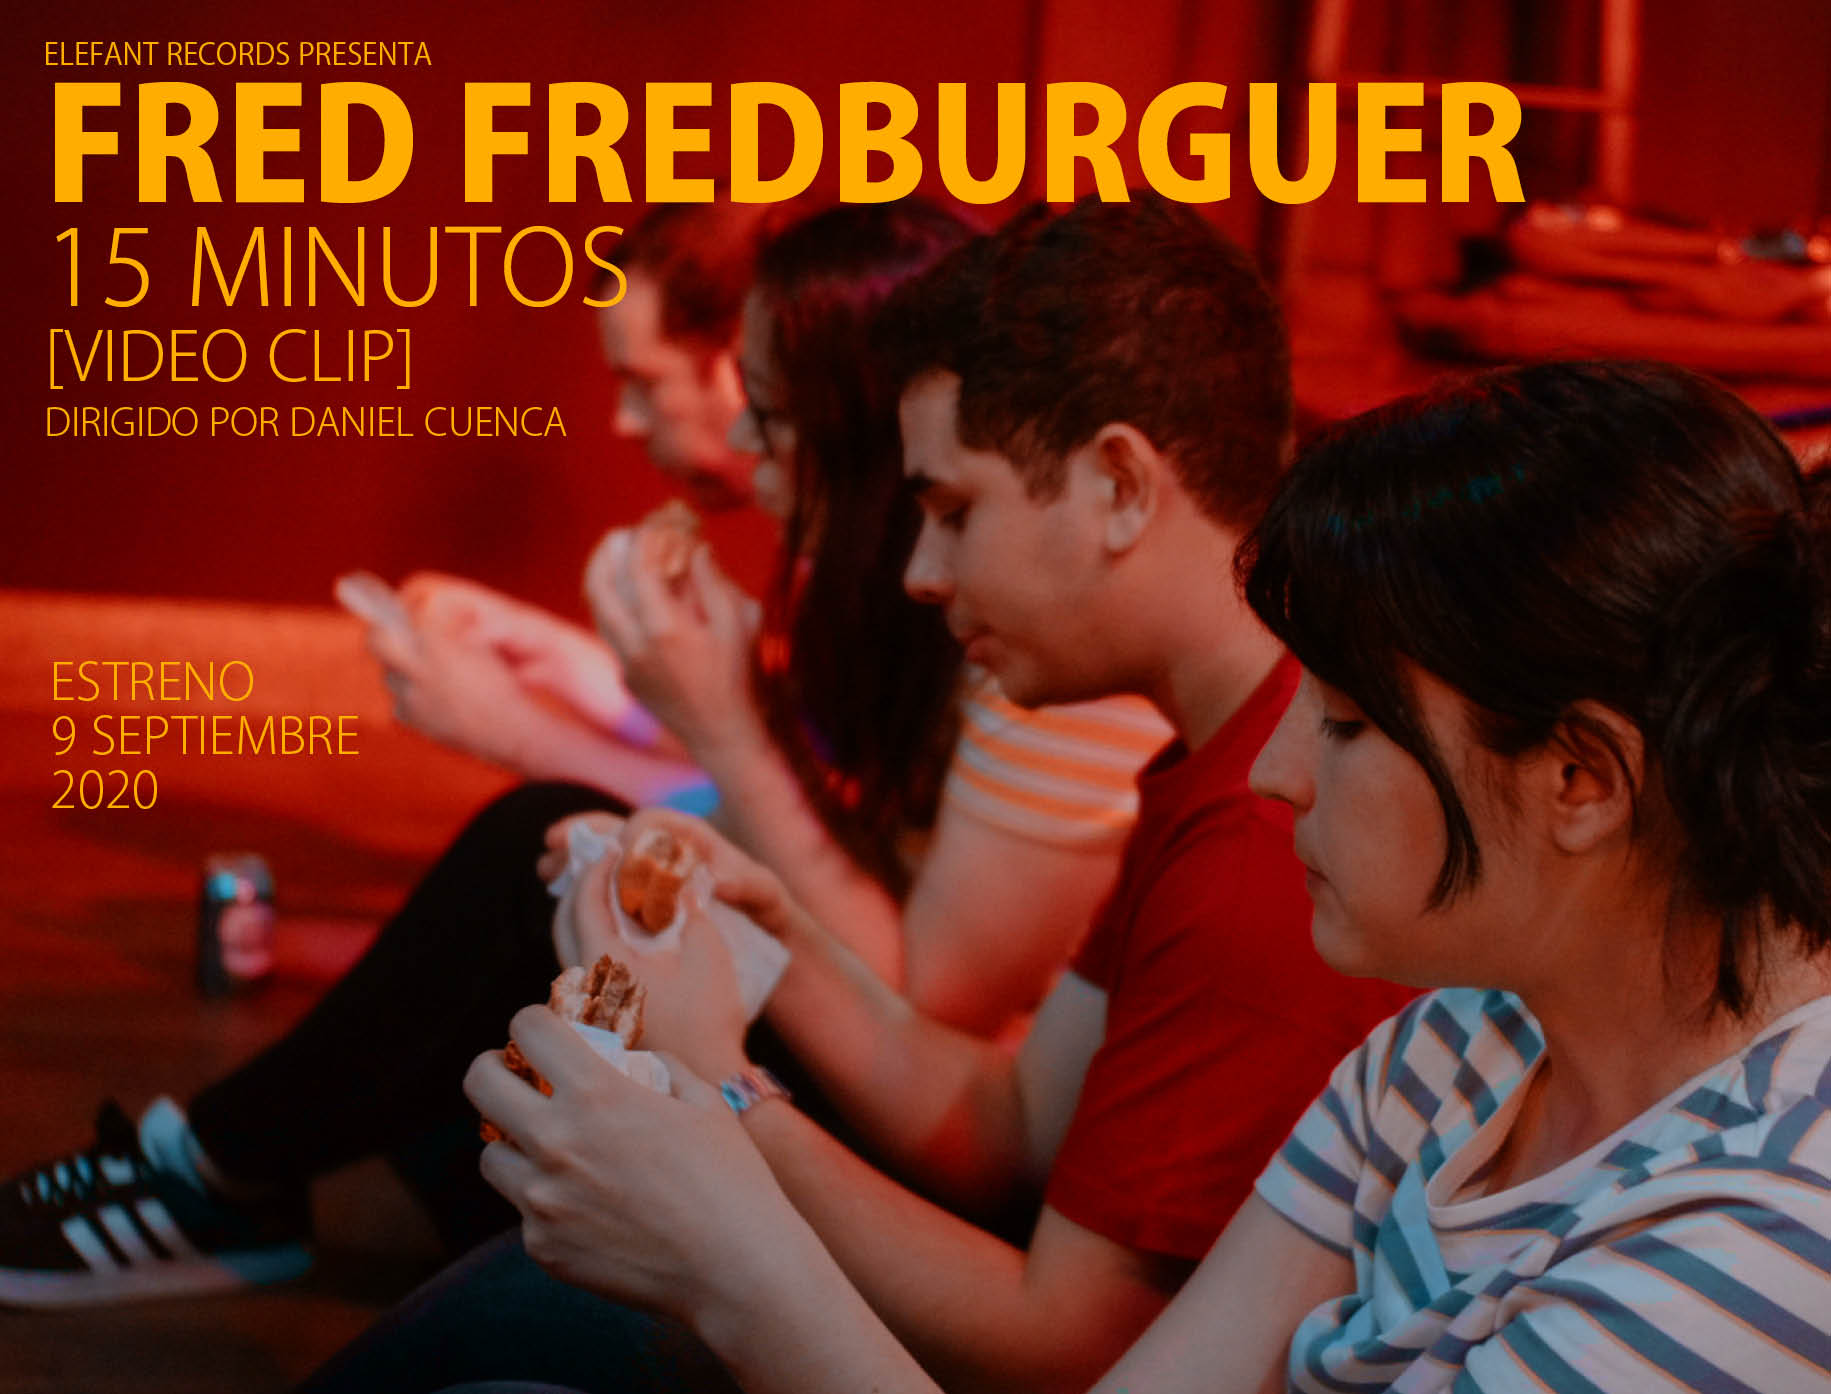 Fred Fredburguer "15 Minutos" 